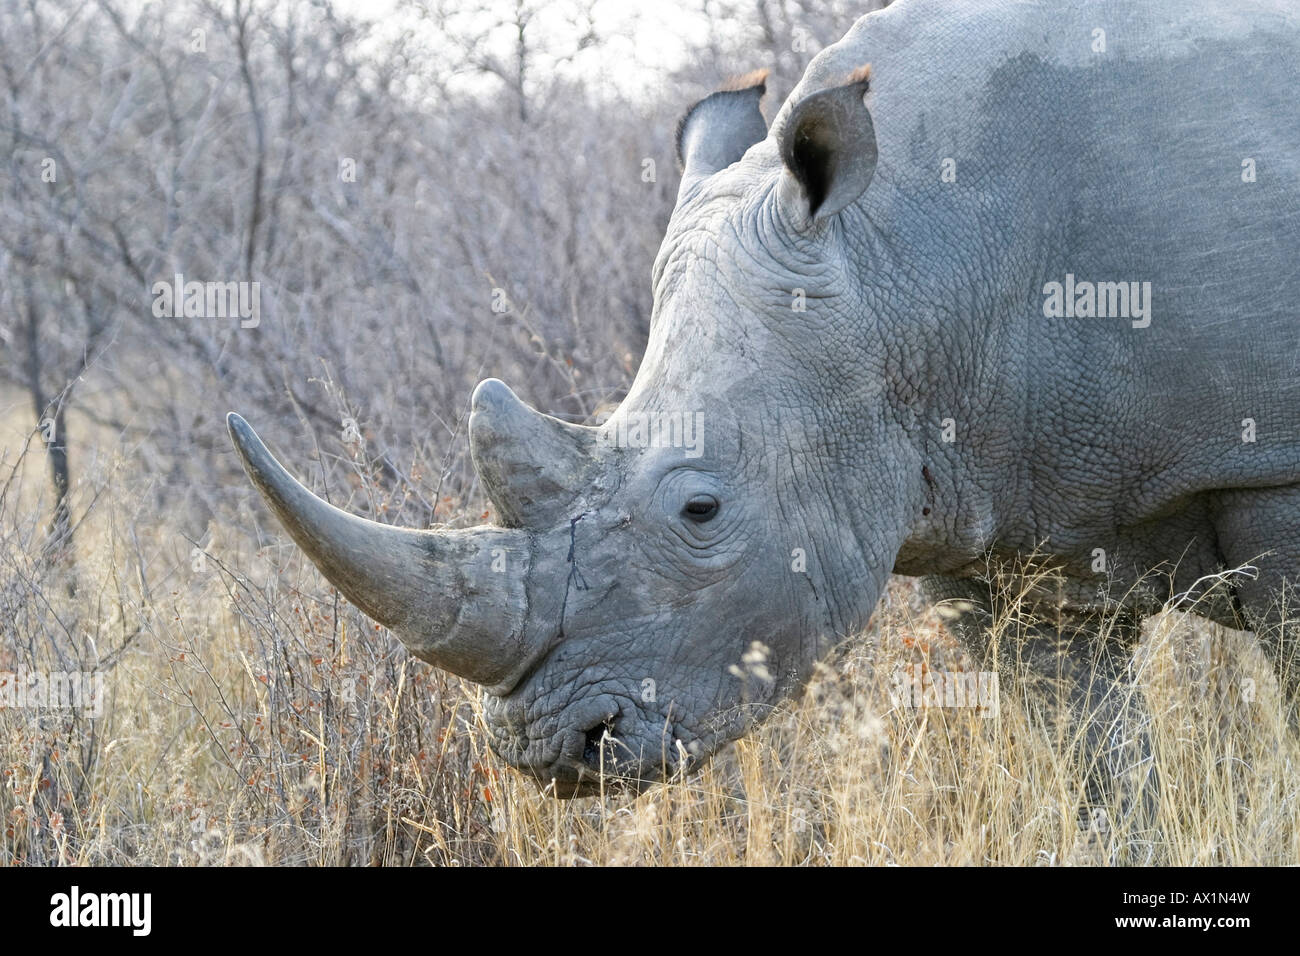 White Rhinoceros or Square-lipped rhinoceros (Ceratotherium simum), Khama Rhino Sanctuary Park, Serowe, Botswana, Africa Stock Photo